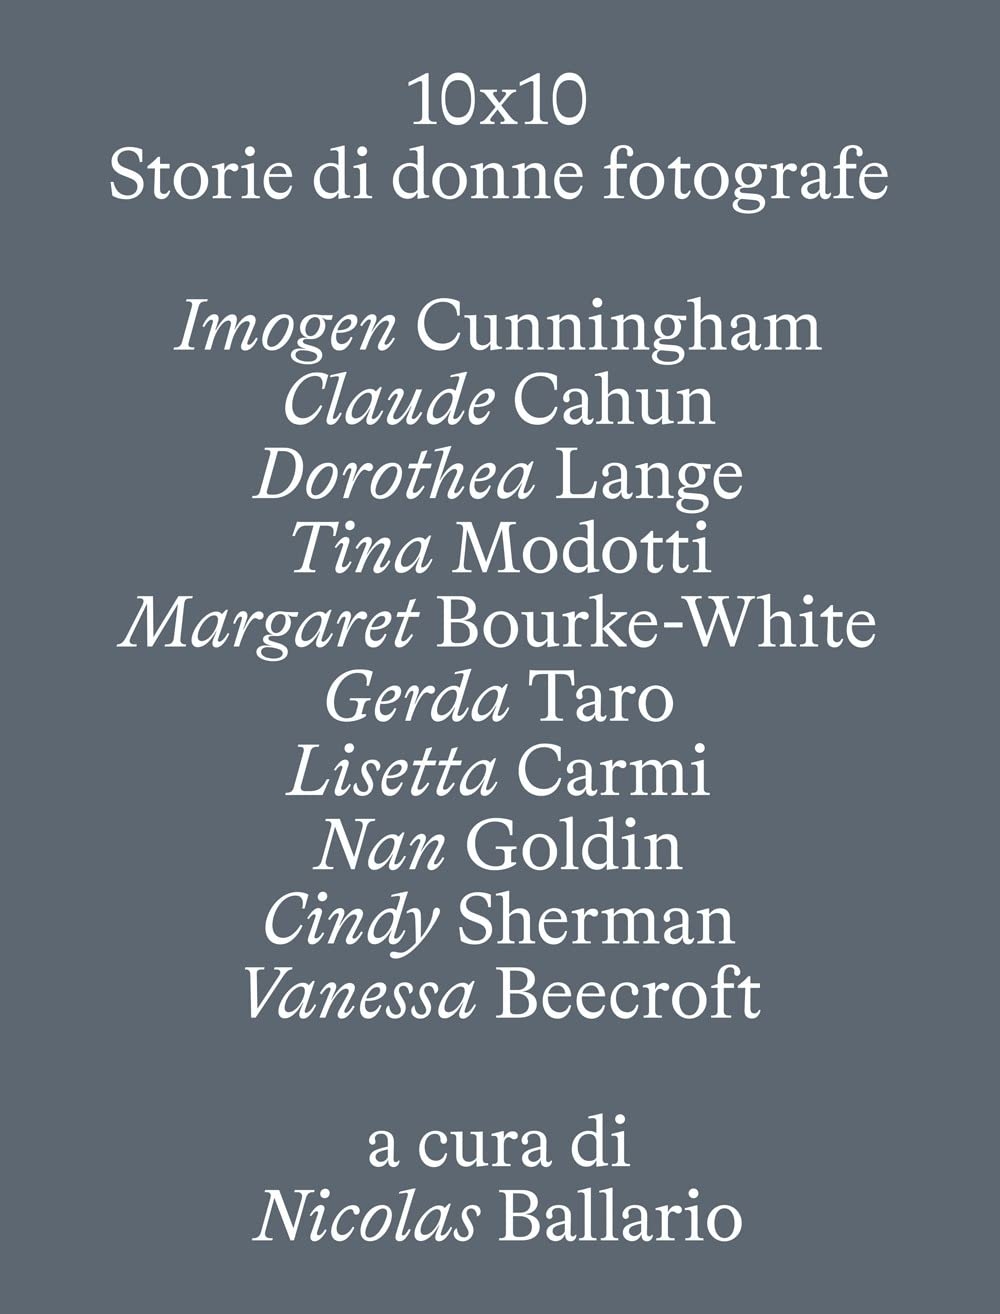 Nicolas Ballario (a cura di) ‒ 10x10. Storie di donne fotografe (24 Ore Cultura, Milano 2022)